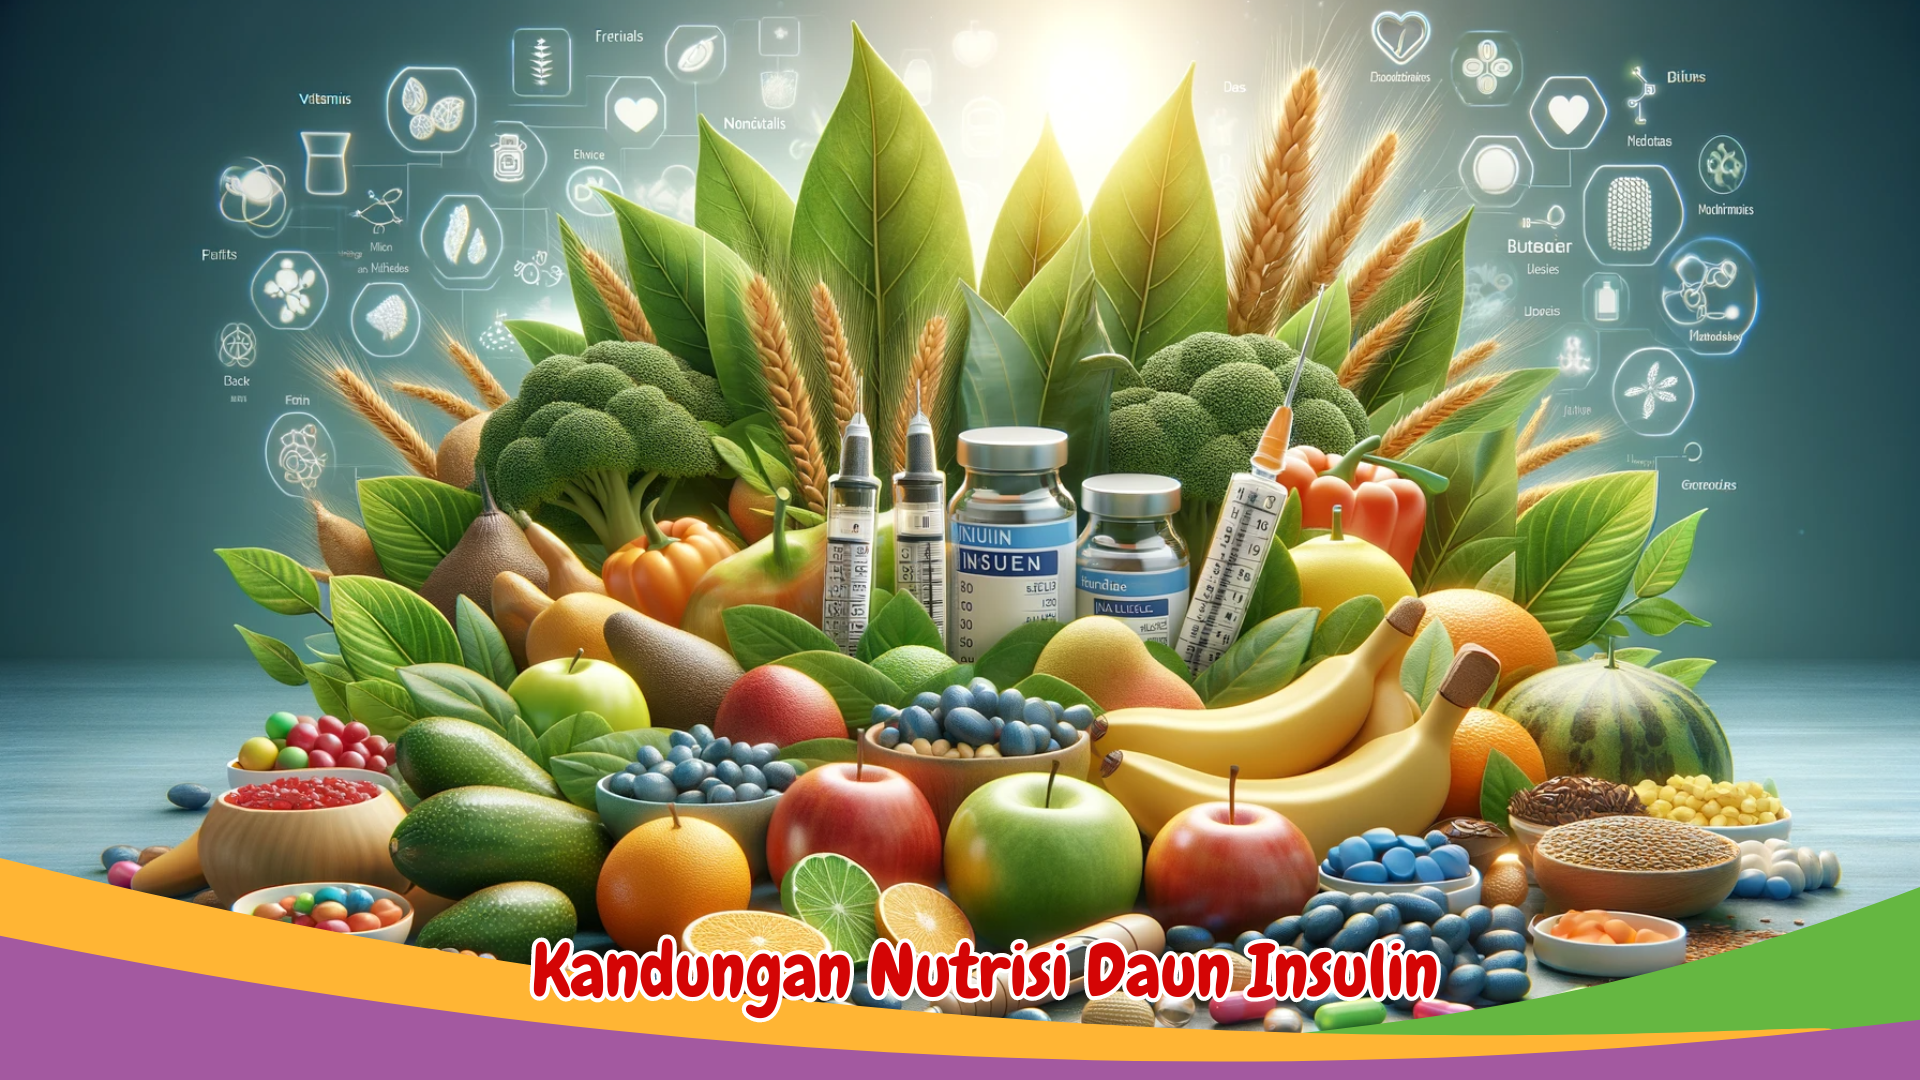 Kandungan Nutrisi Daun Insulin